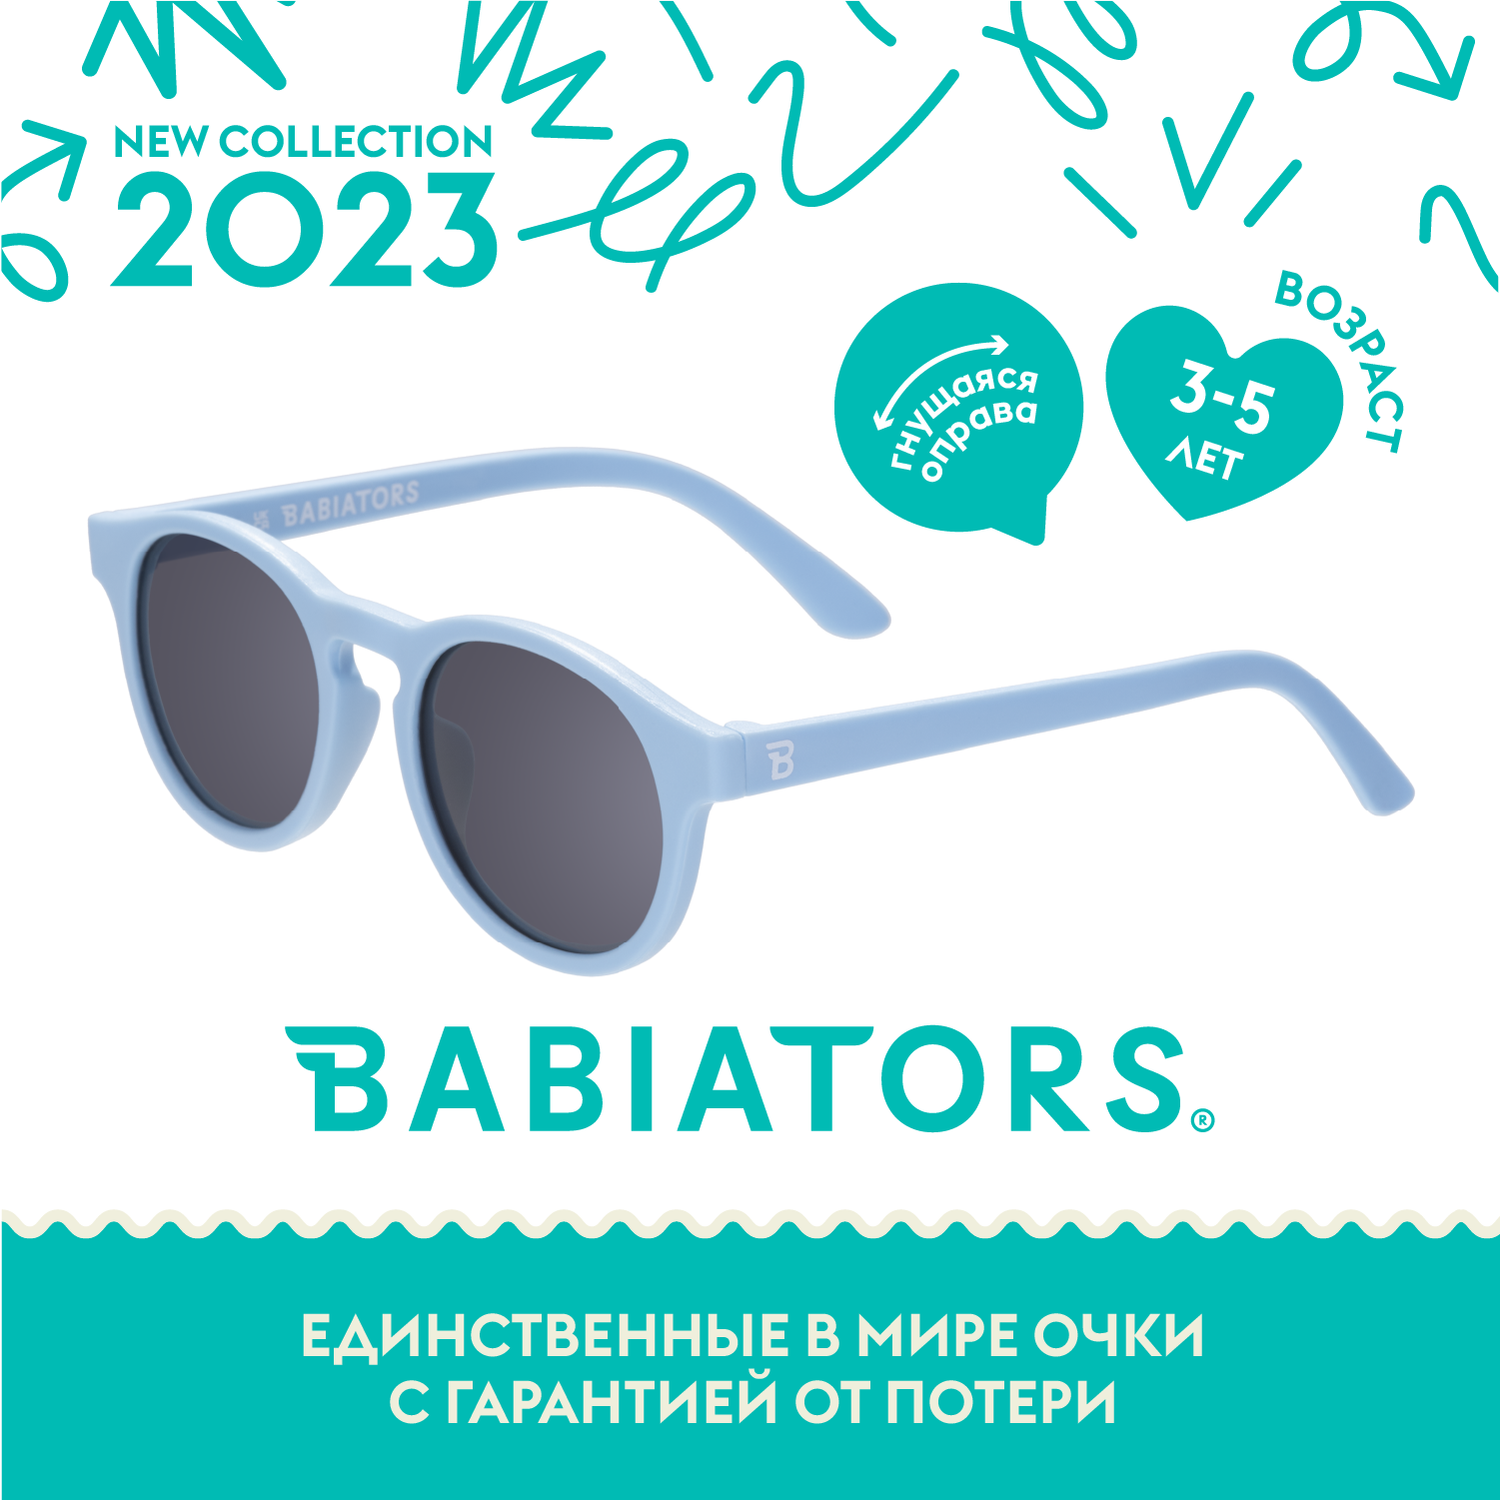 Детские солнцезащитные очки Babiators Keyhole Голубые бермуды 3-5 лет с мягким чехлом O-KEY-003-M - фото 2